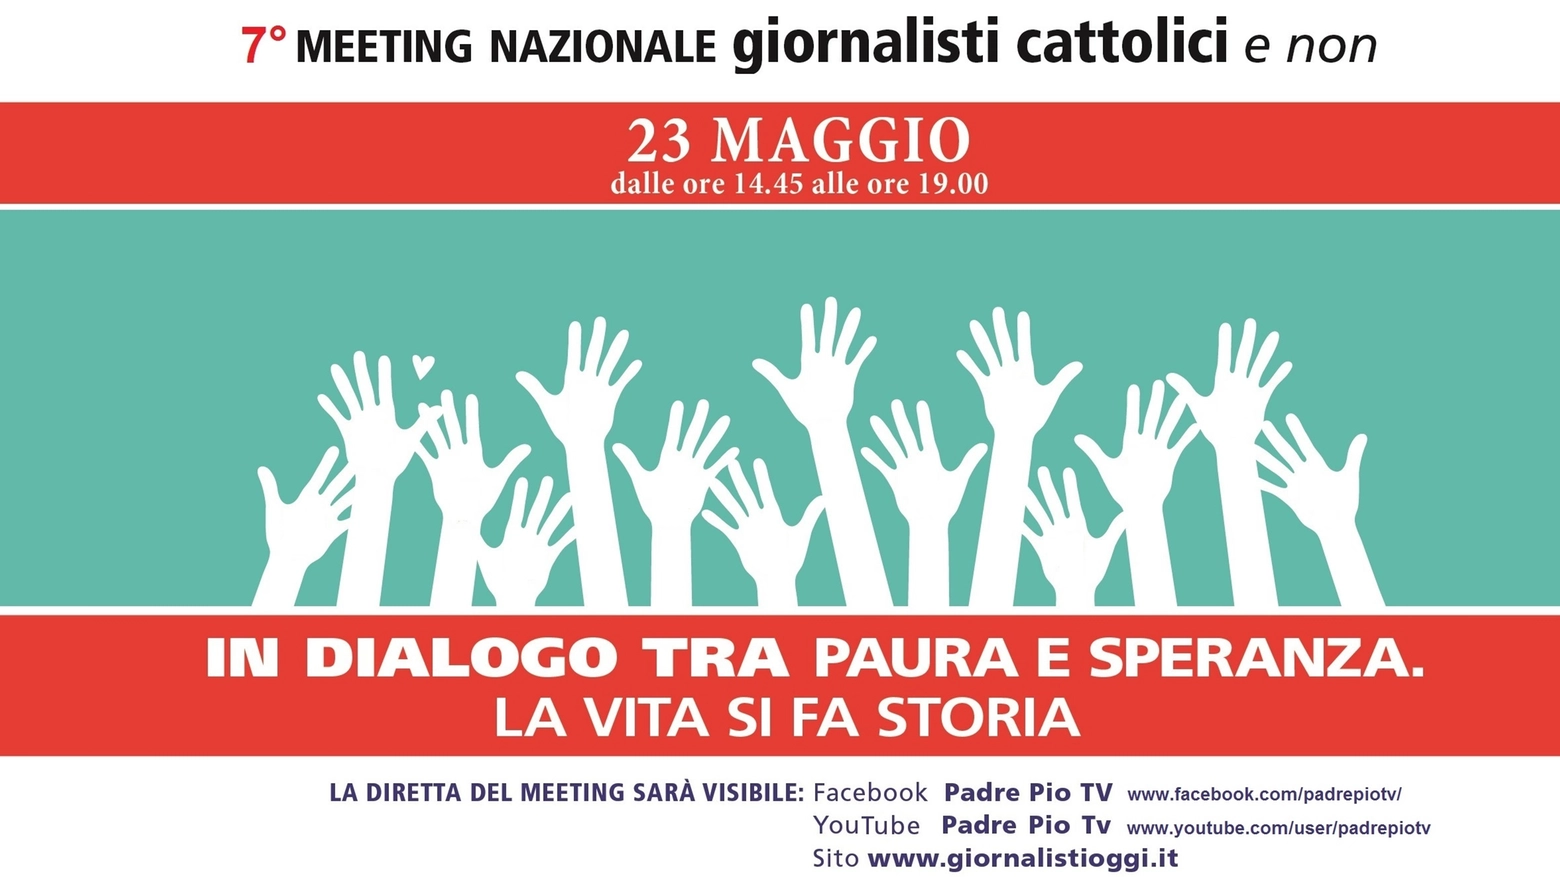 “Meeting nazionale giornalisti cattolici e non” in programma il prossimo 23 maggio